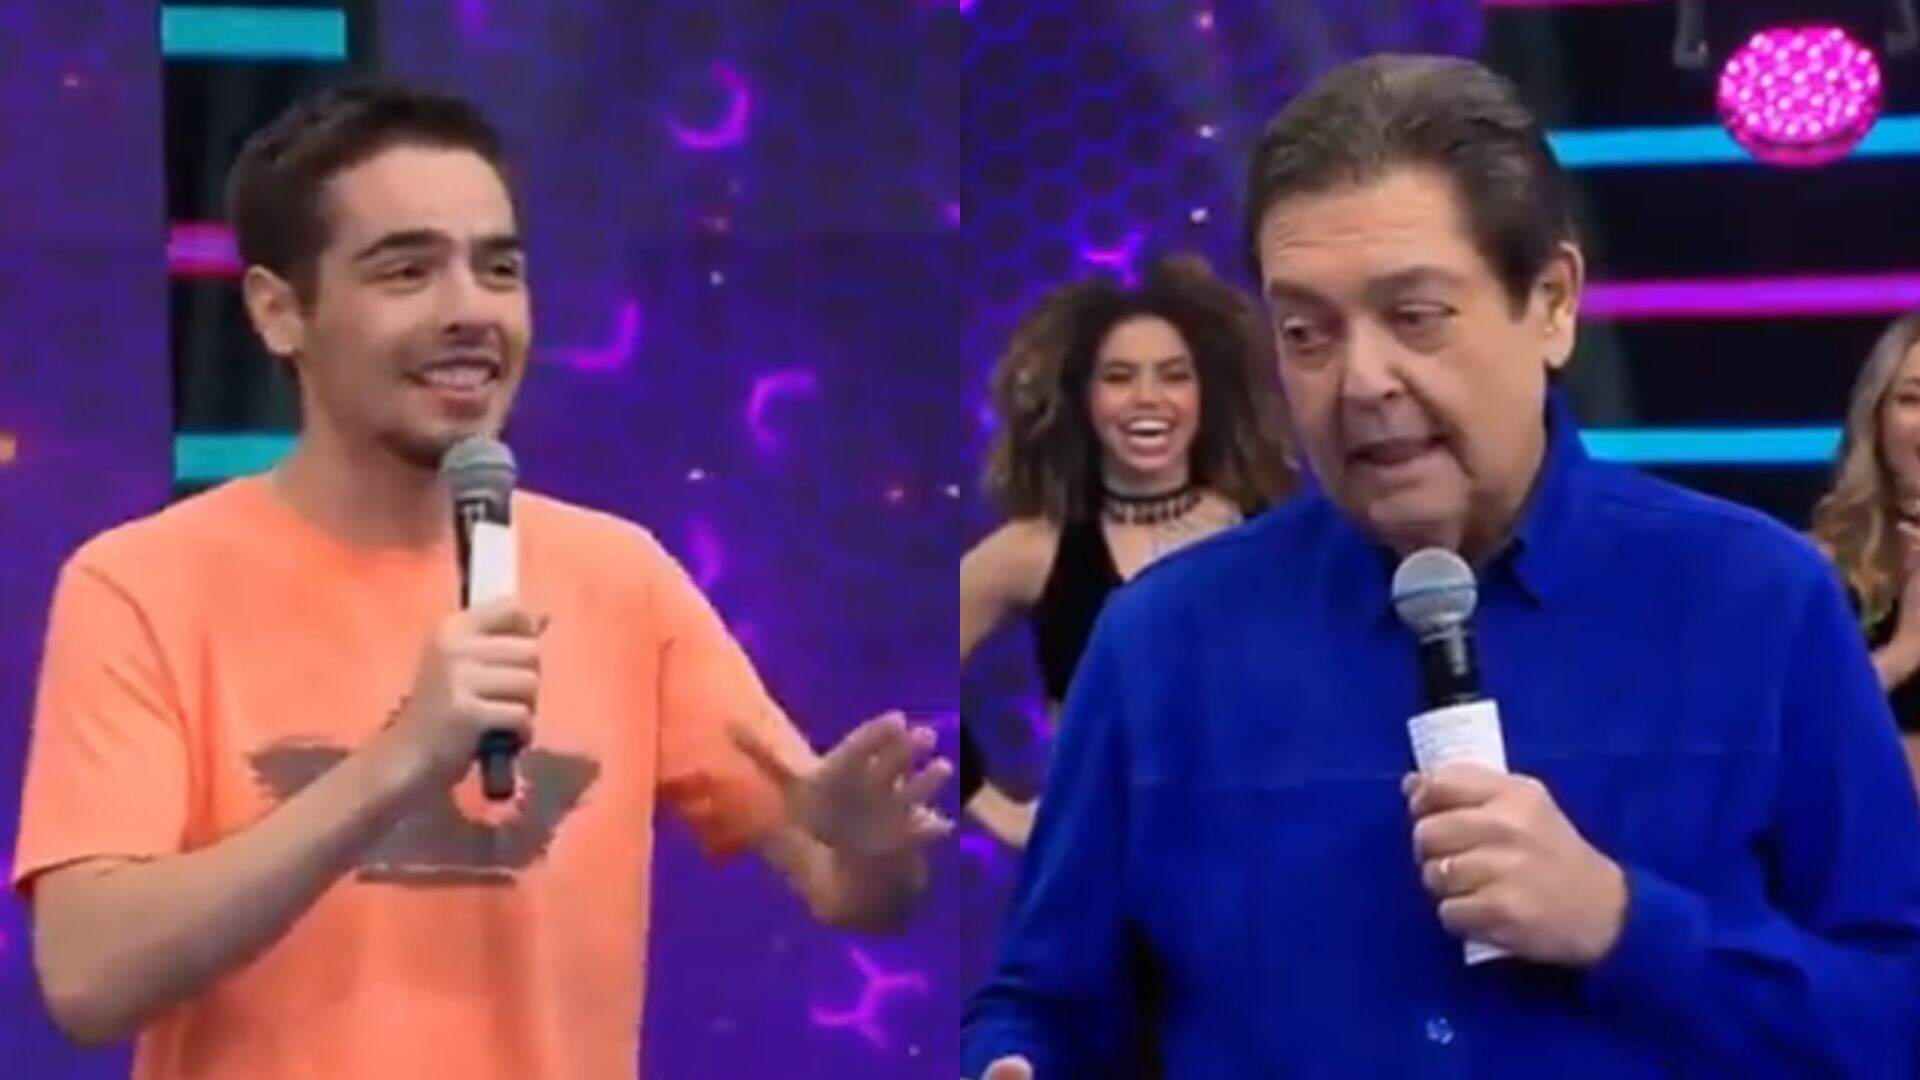 João Guilherme faz pergunta indelicada a Faustão durante programa: “Me livrar de você” - Metropolitana FM